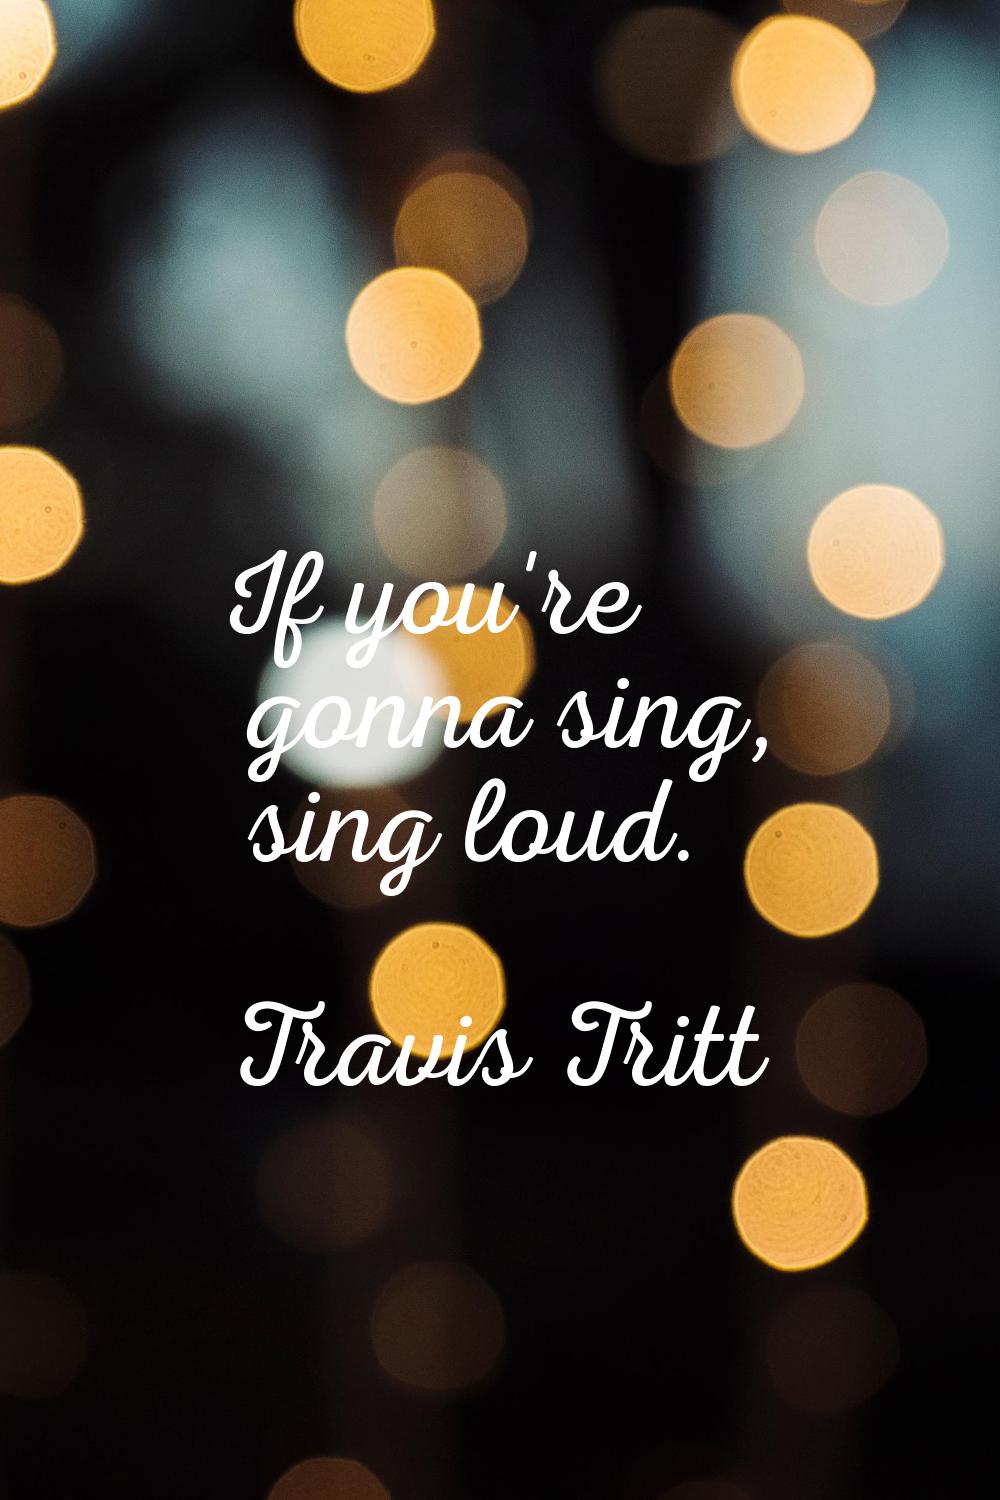 If you're gonna sing, sing loud.